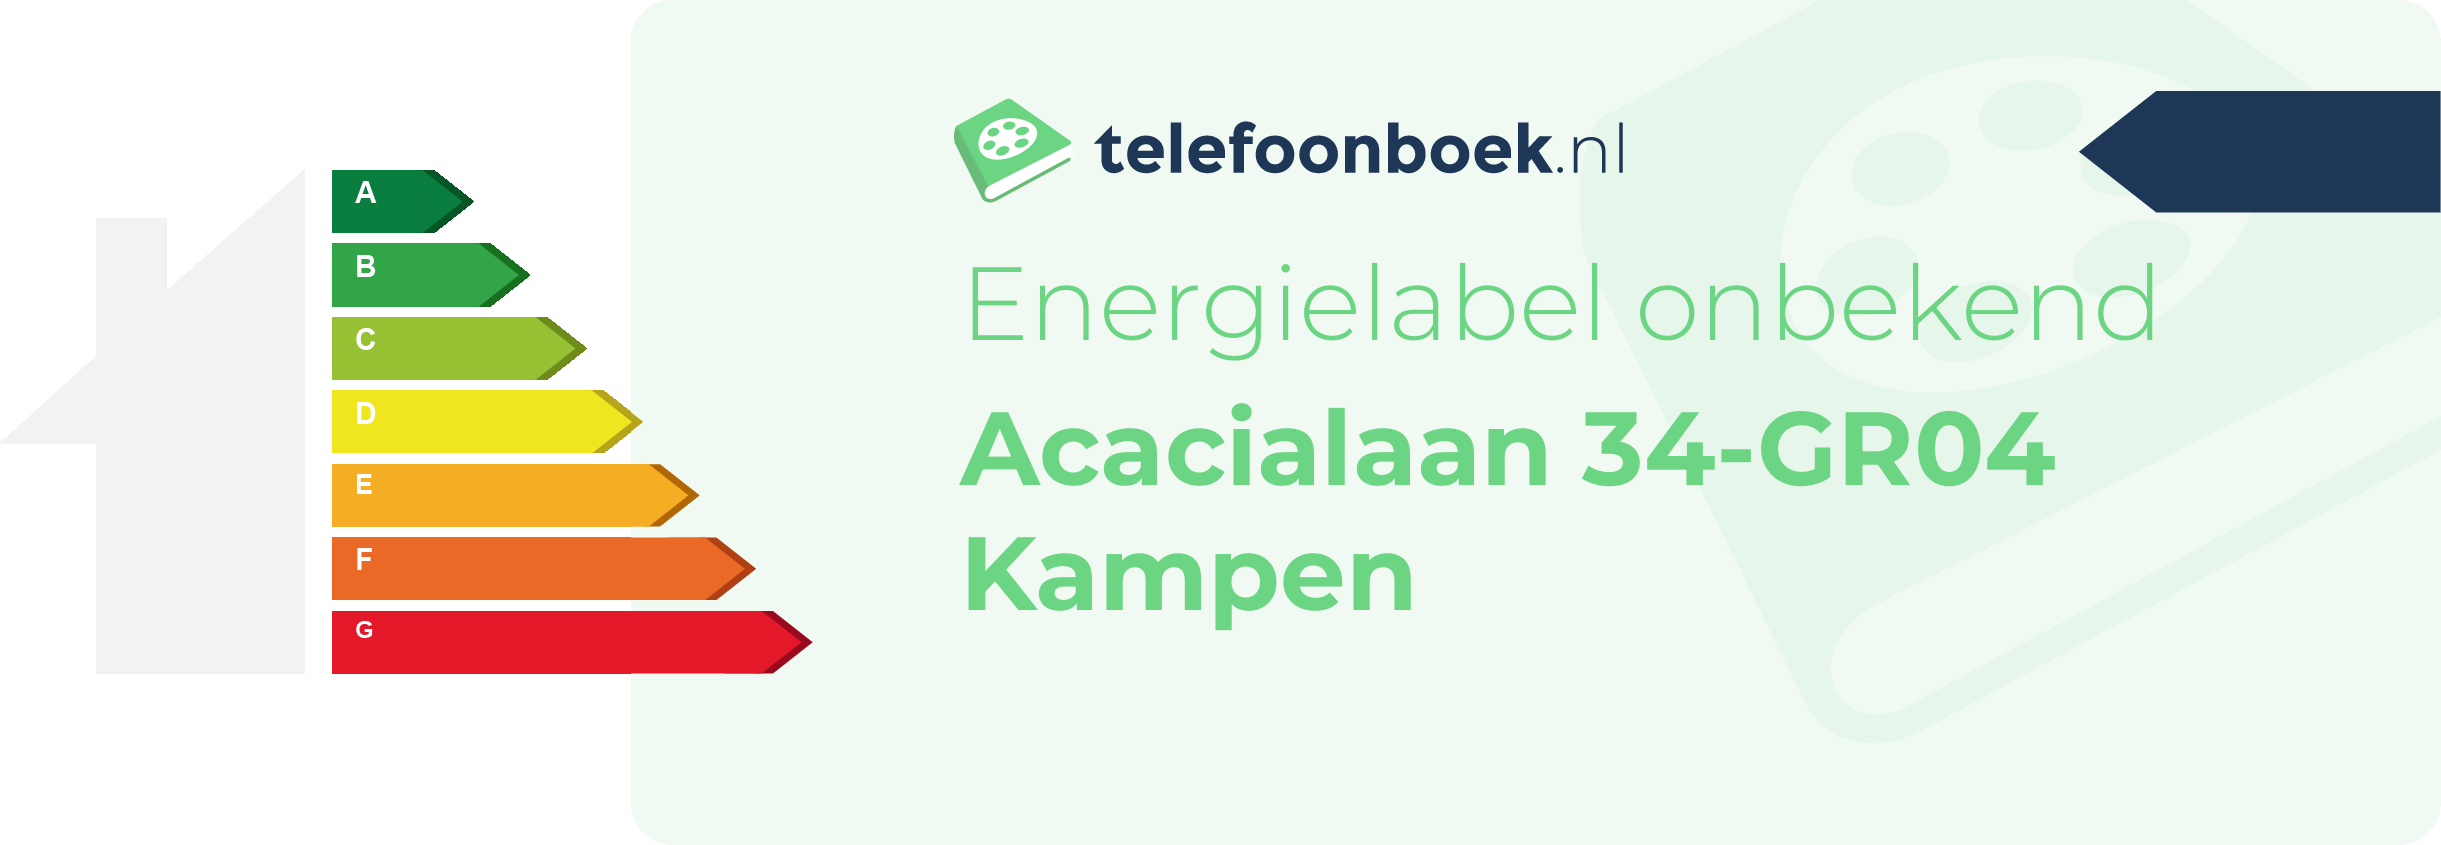 Energielabel Acacialaan 34-GR04 Kampen